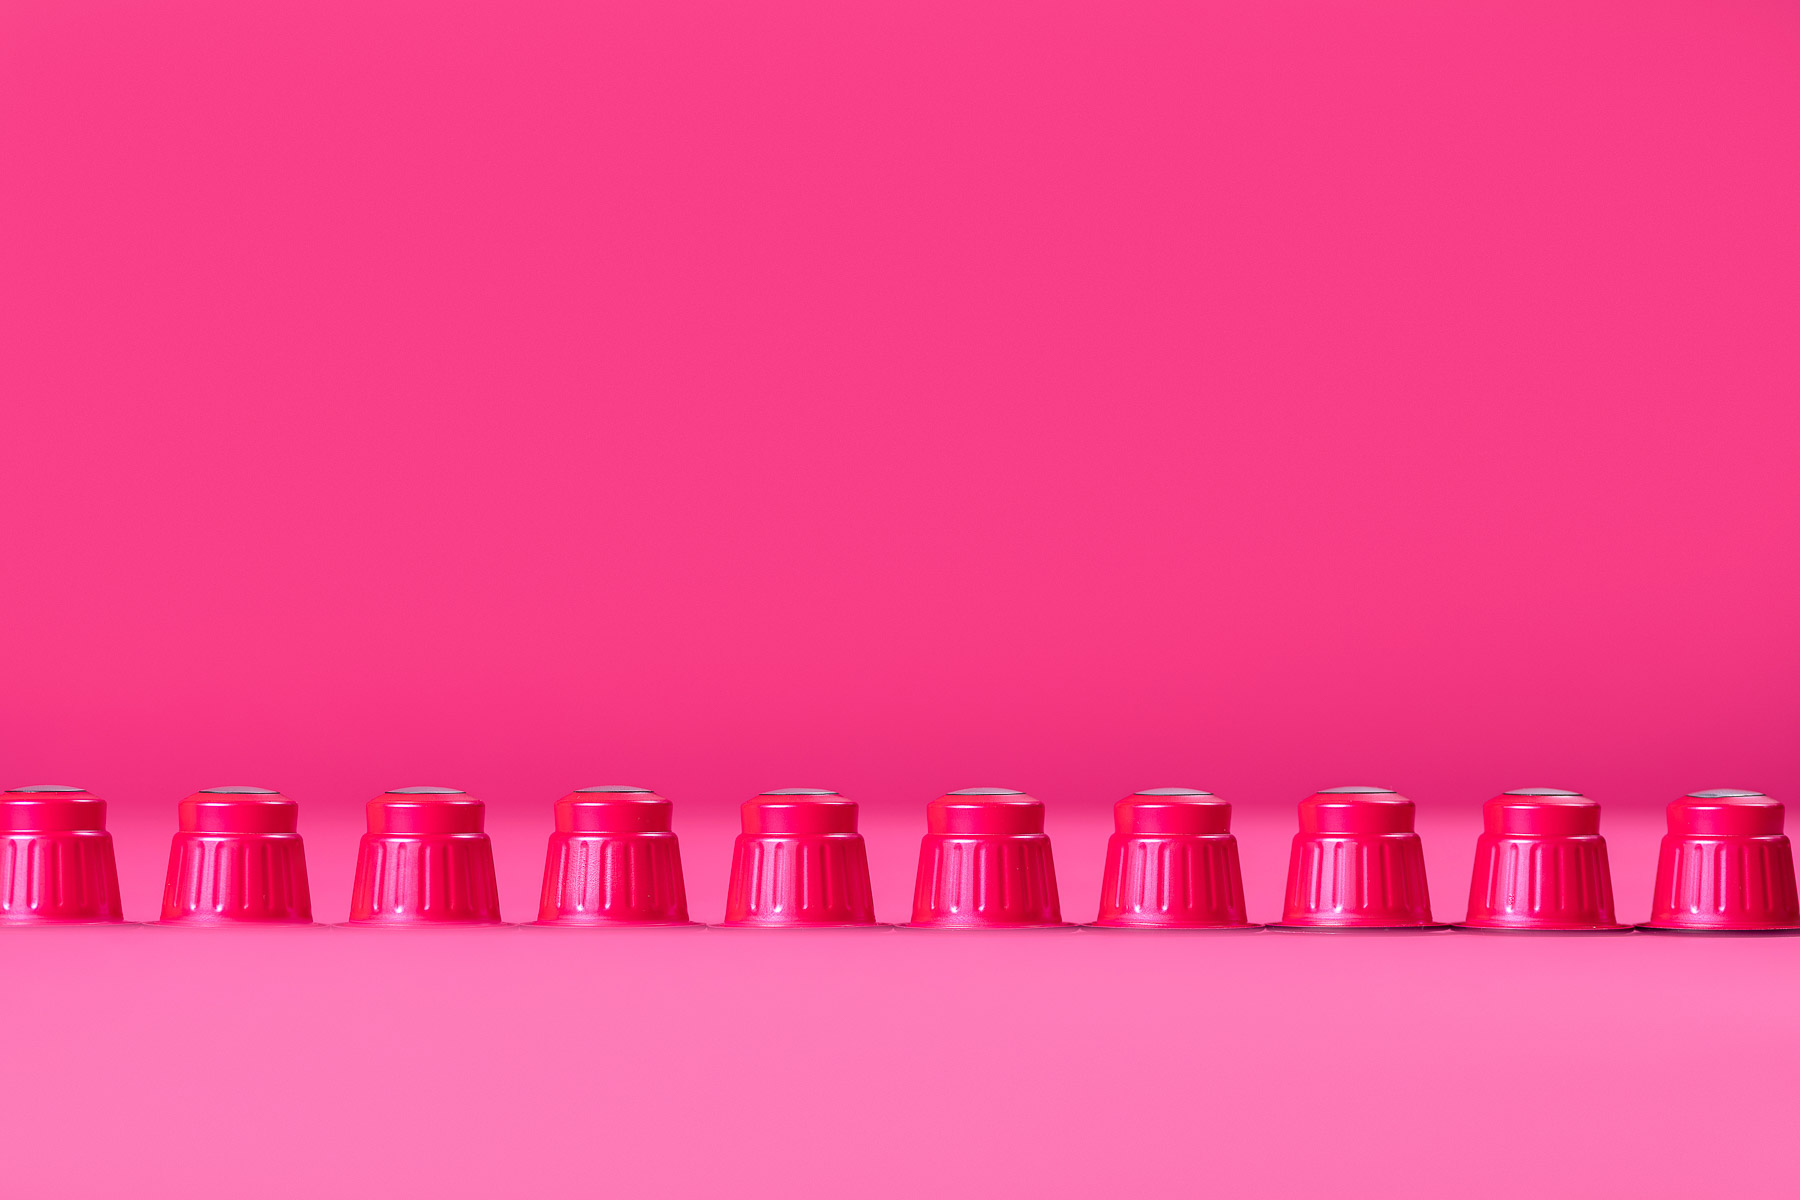 Rote Kaffekapseln in einer Reihe fotografiert, in einer pinken Umgebung.